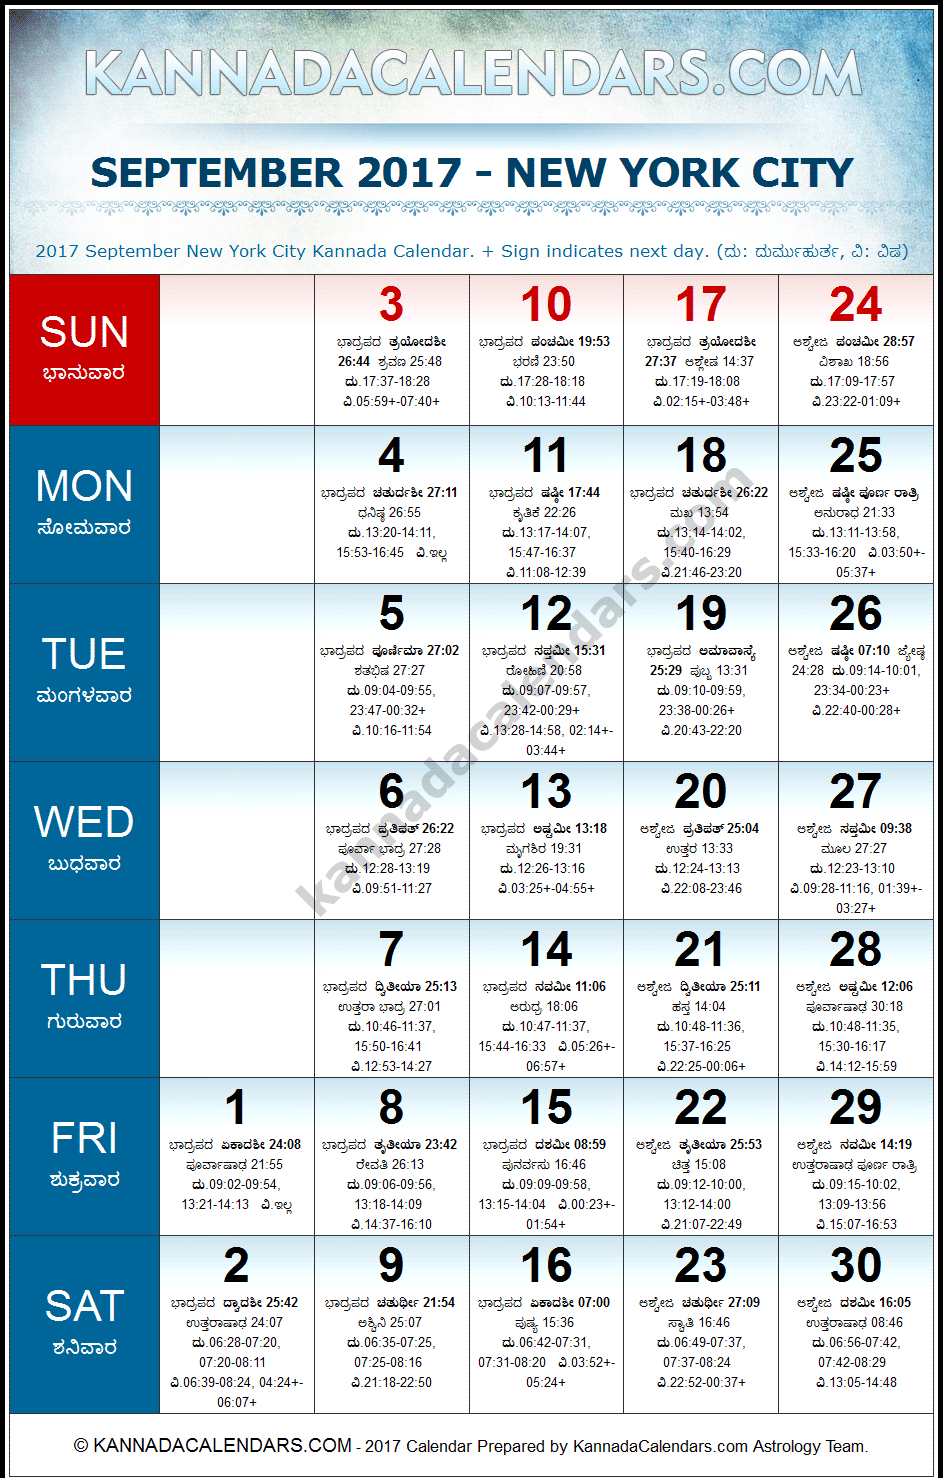 September 2017 Kannada Calendar for New York, USA